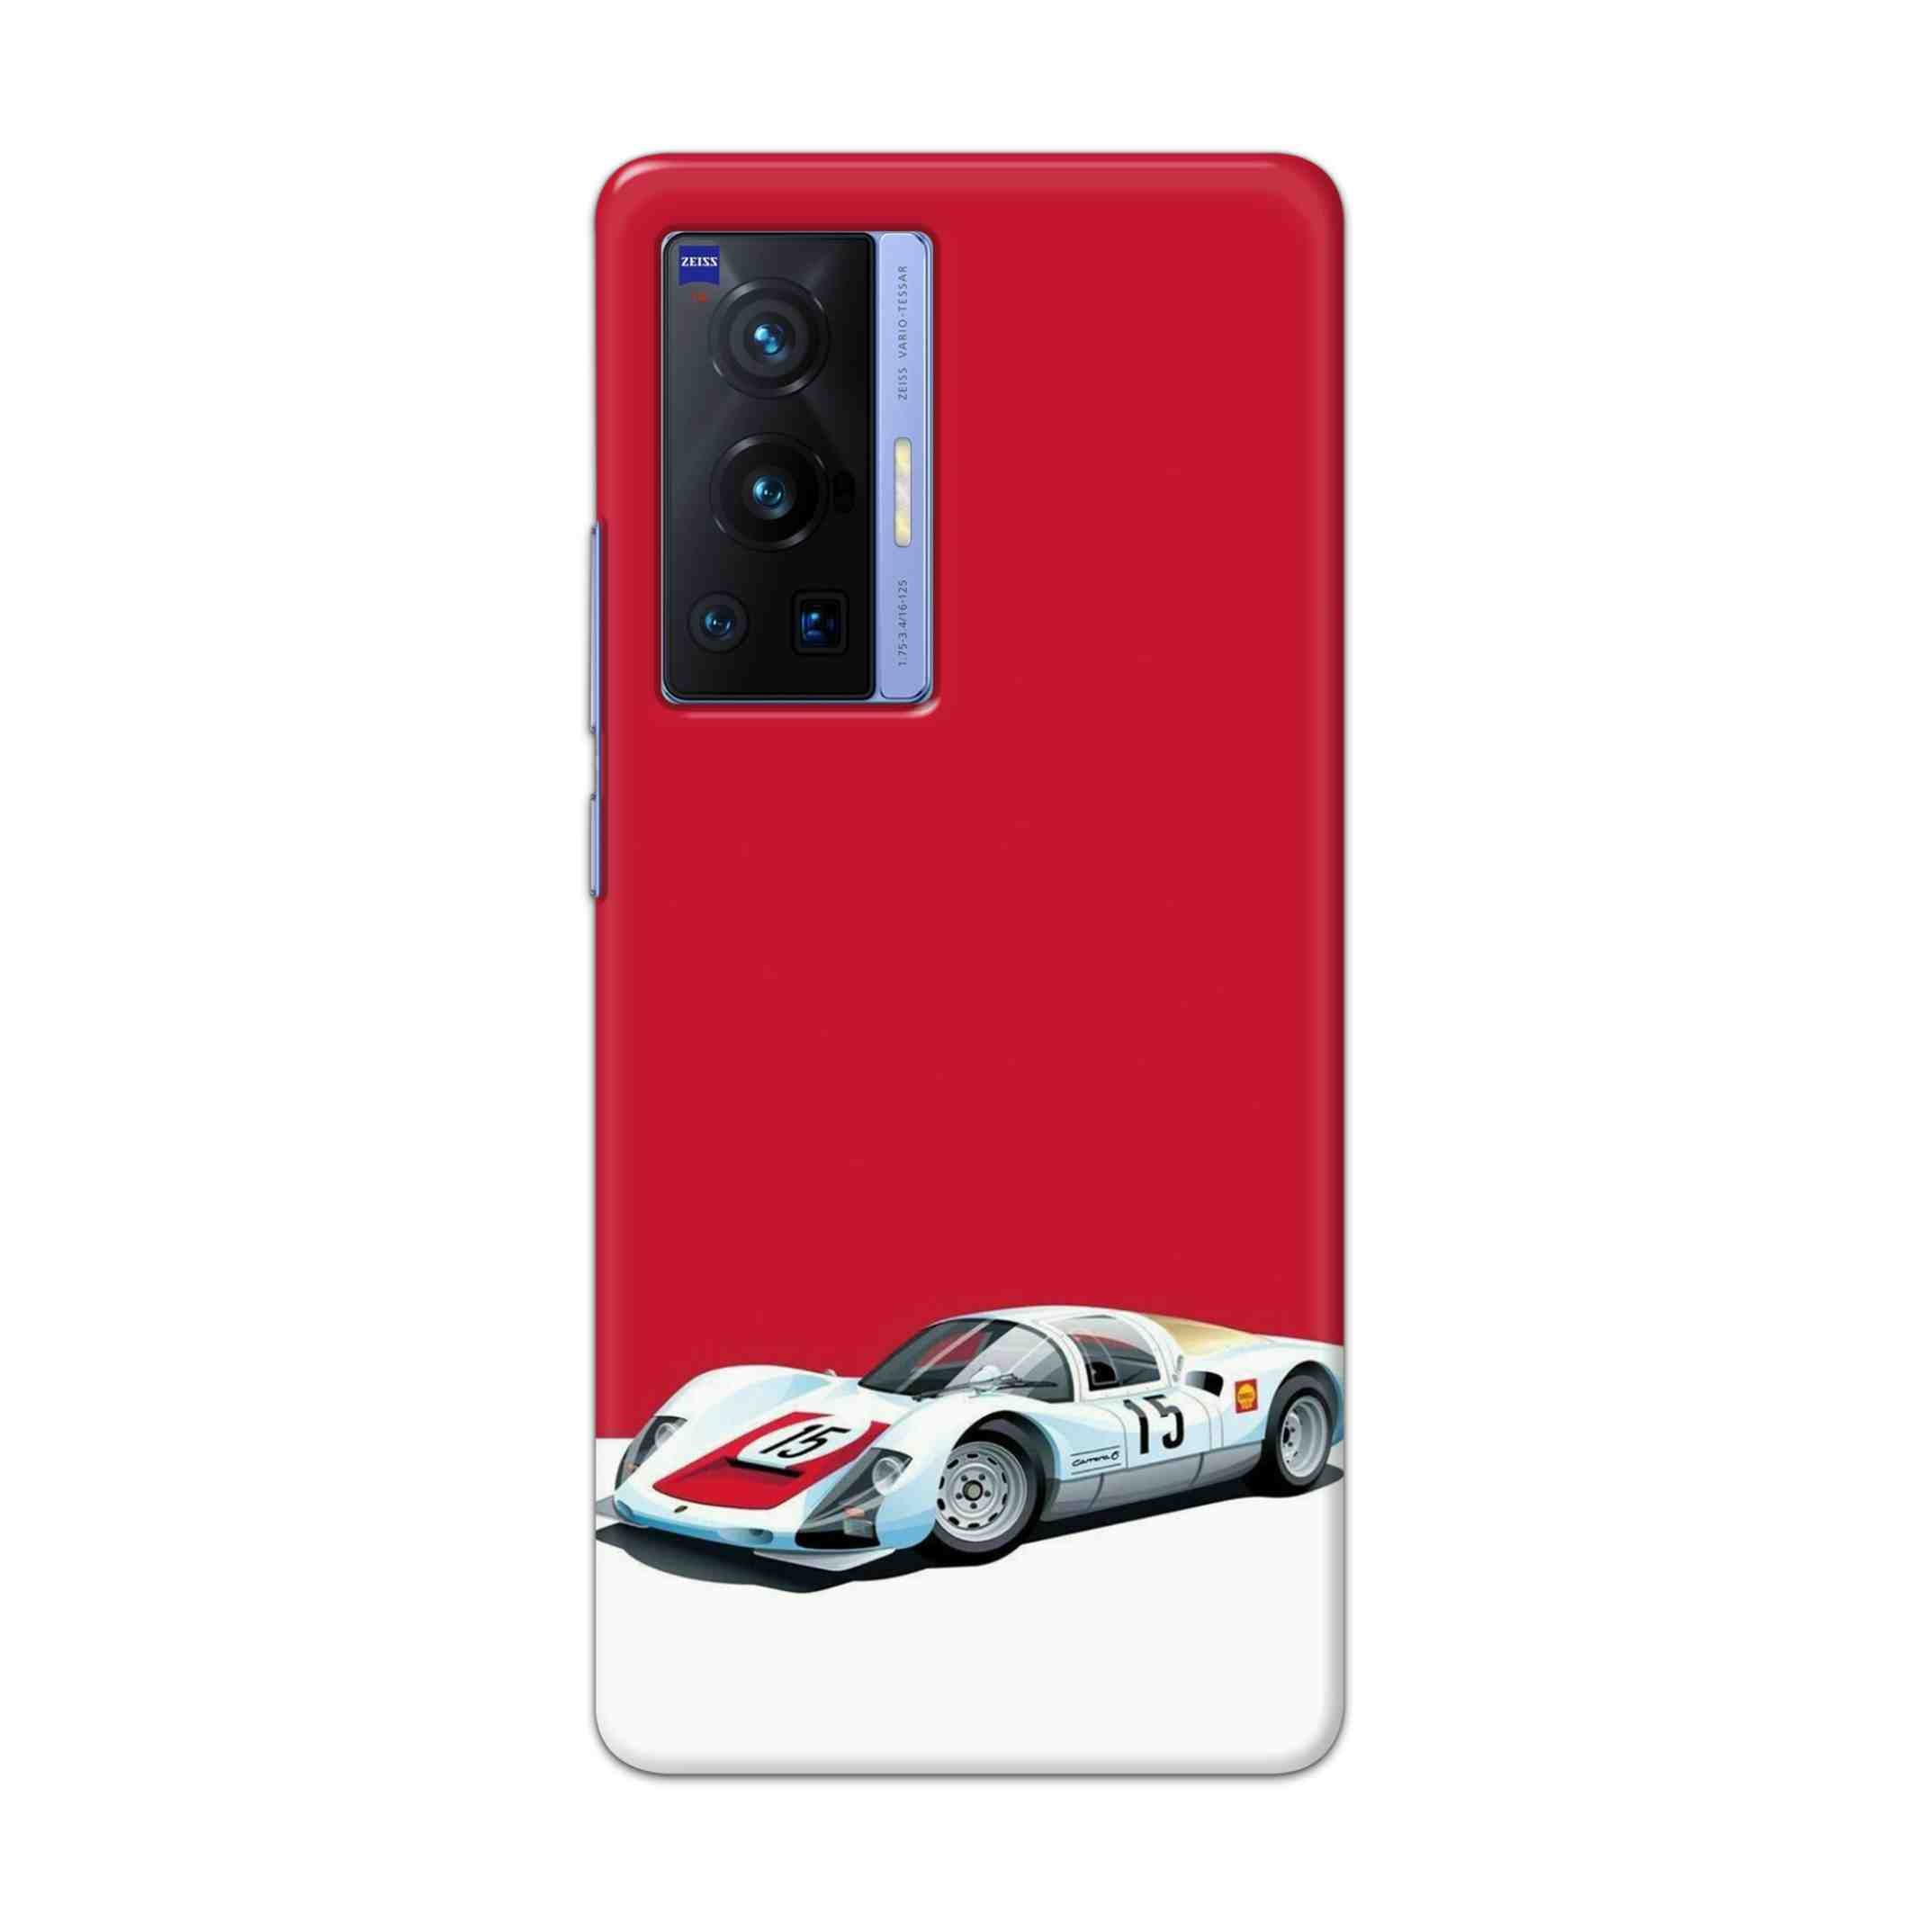 Buy Ferrari F15 Hard Back Mobile Phone Case Cover For Vivo X70 Pro Online